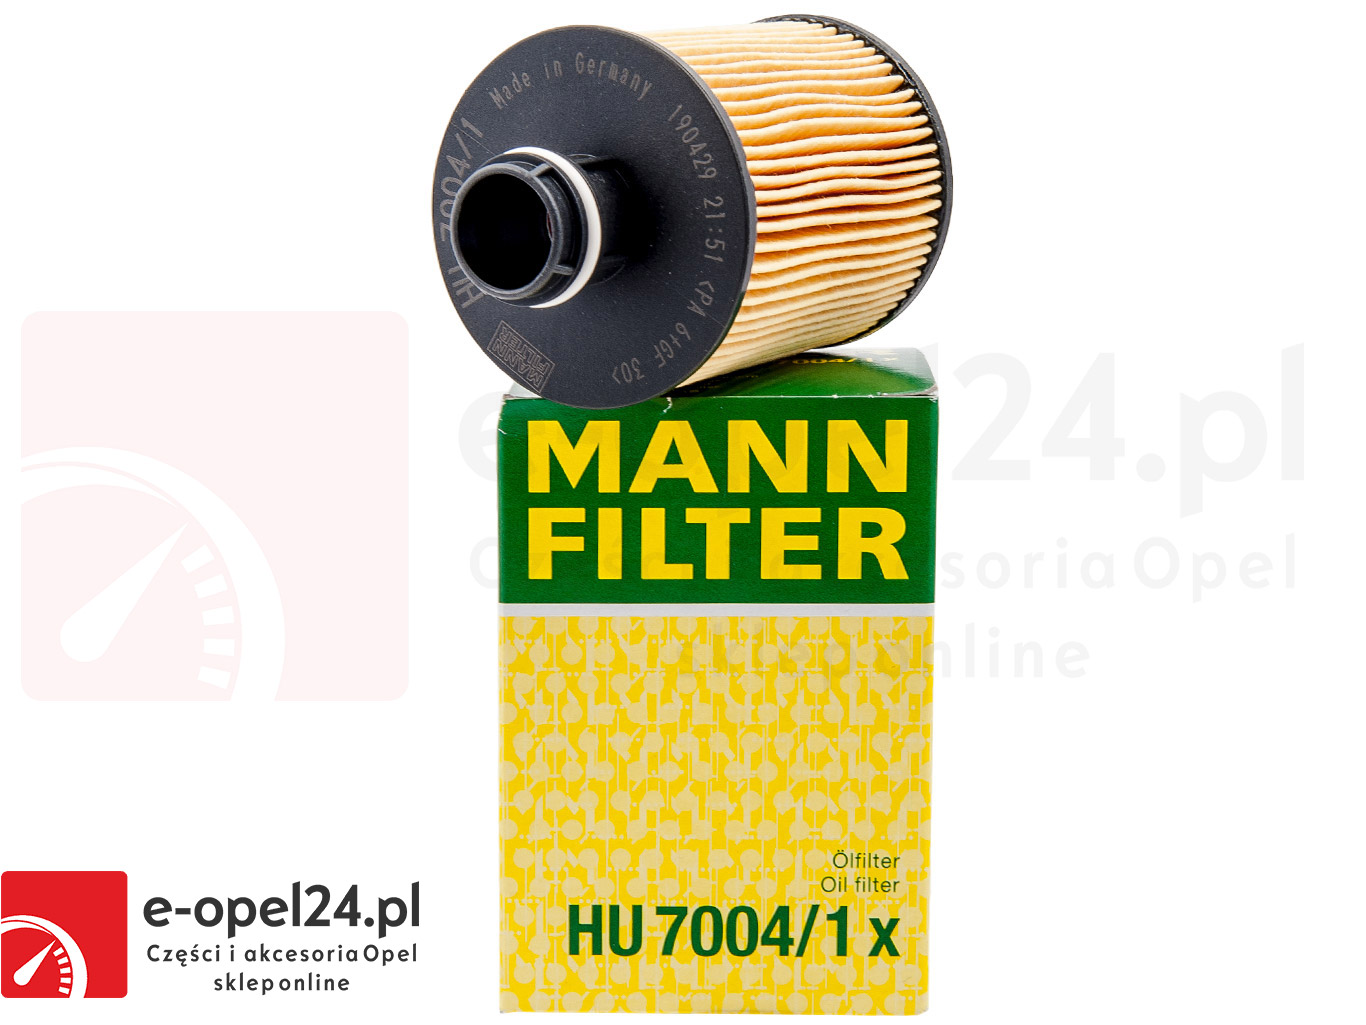 basin Miles In need of Filtr oleju Mann Opel do silników 1.3 1.6 2.0 CDTI | e-opel24.pl